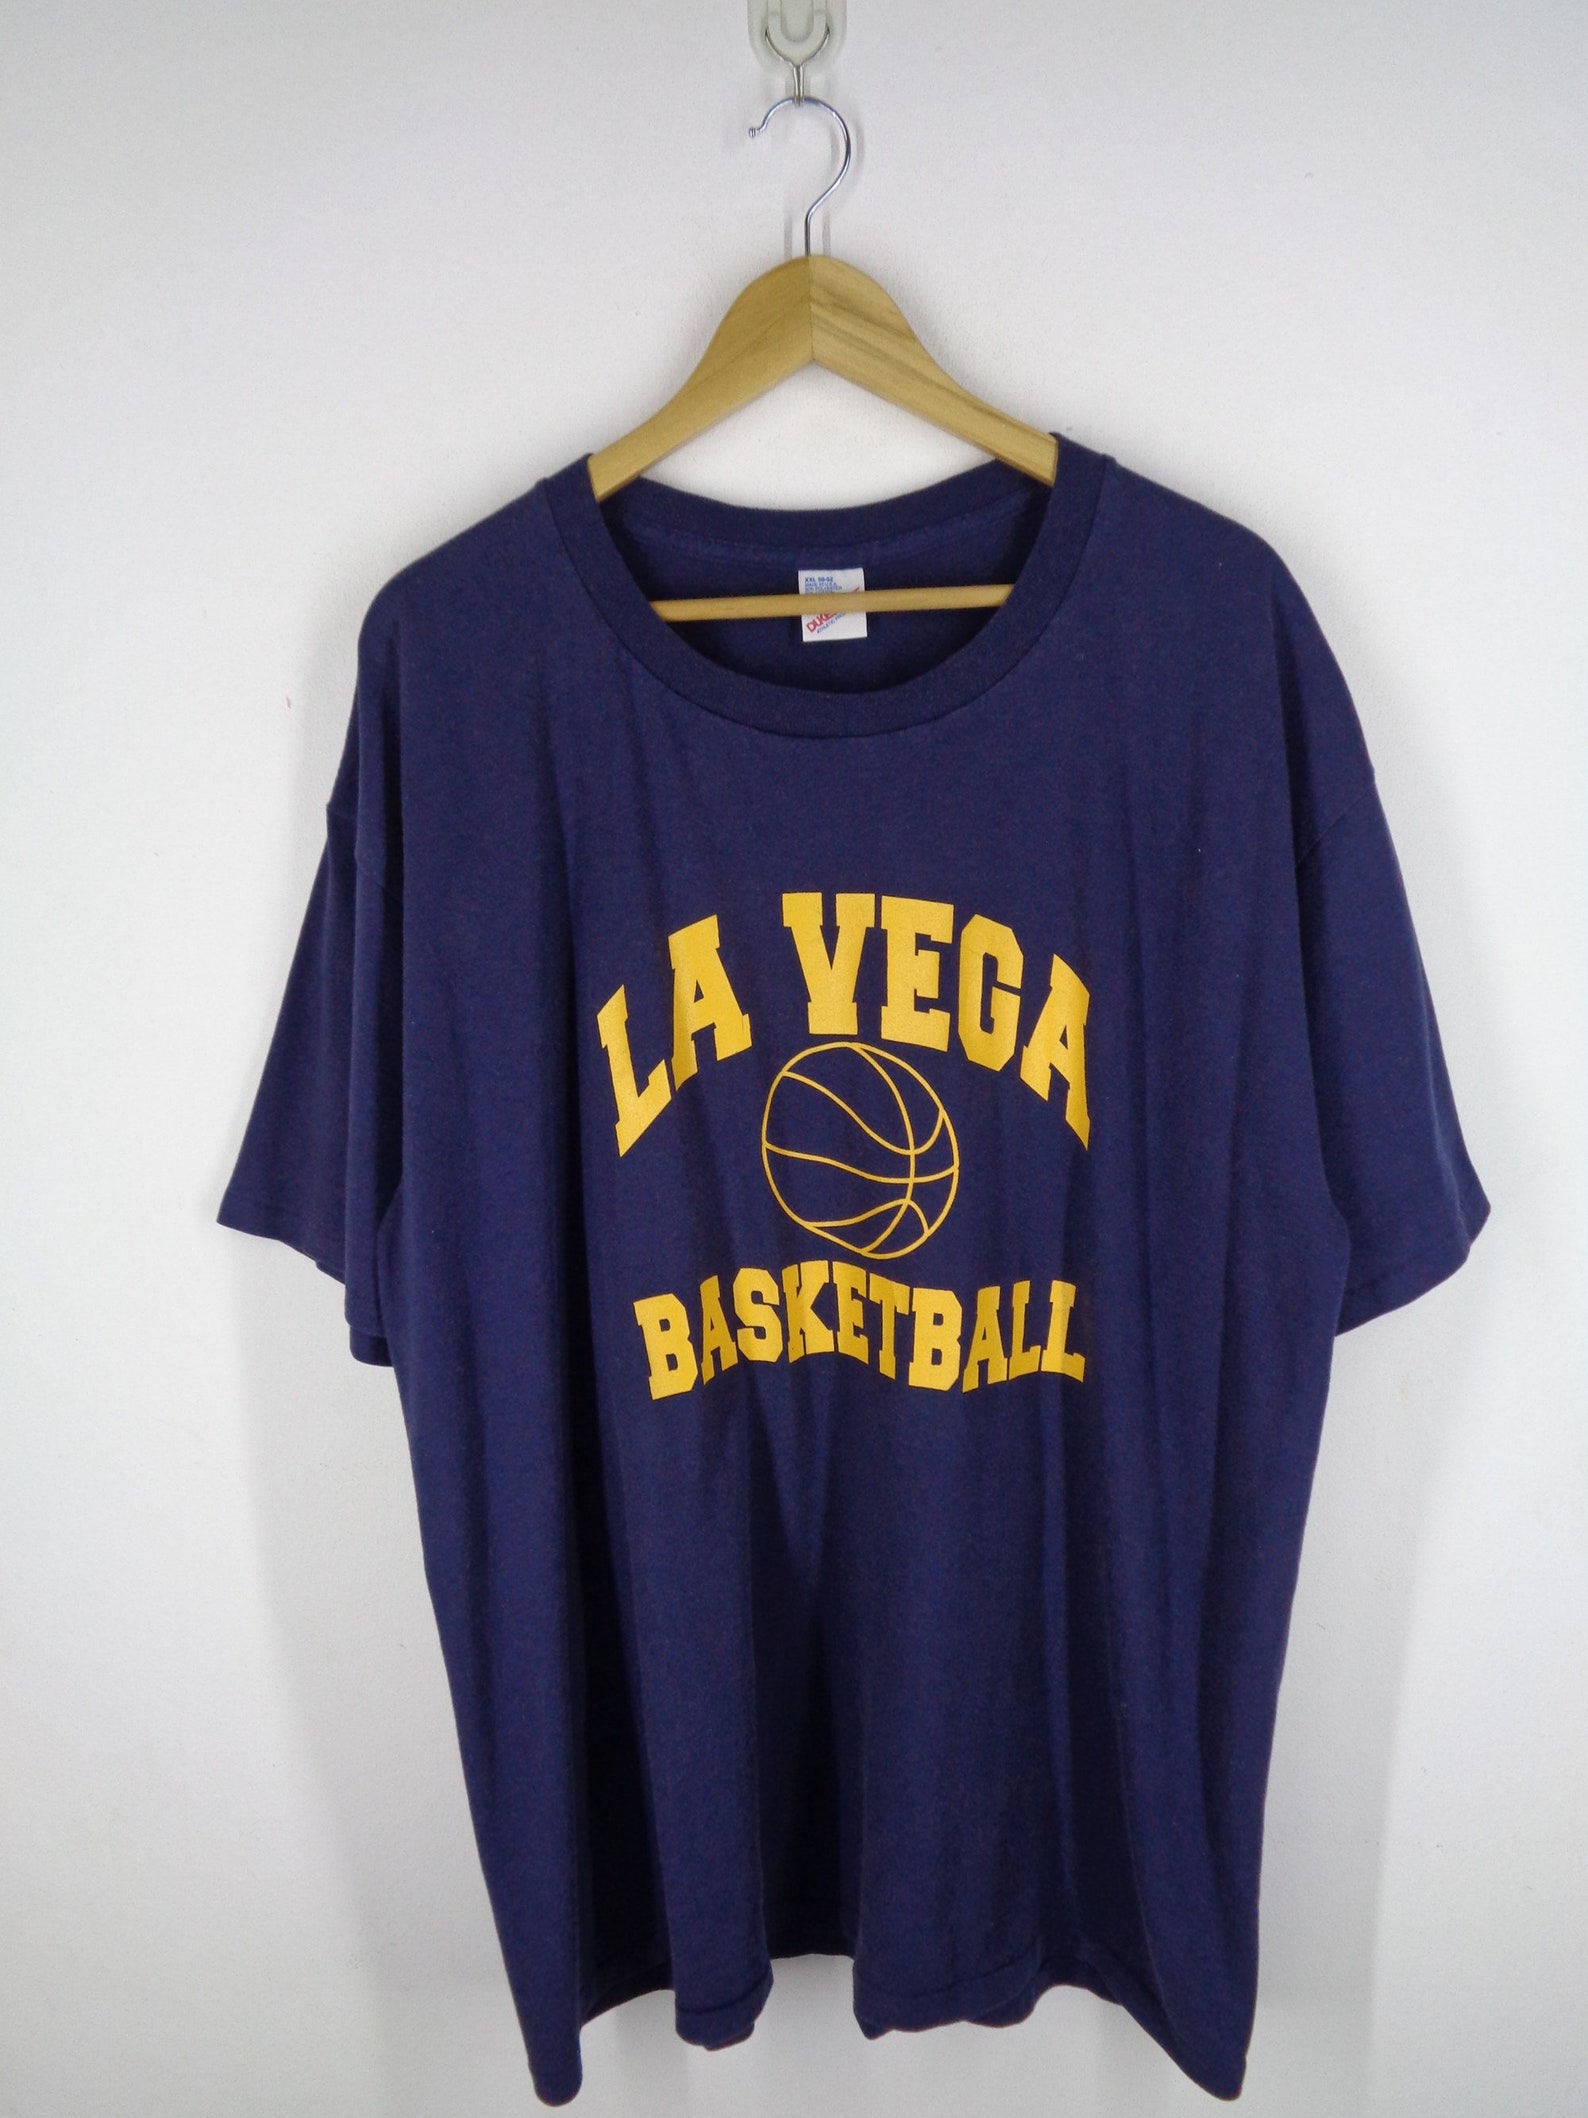 La Vega Basketball Shirt Vintage La Vega Basketball T Shirt | Etsy